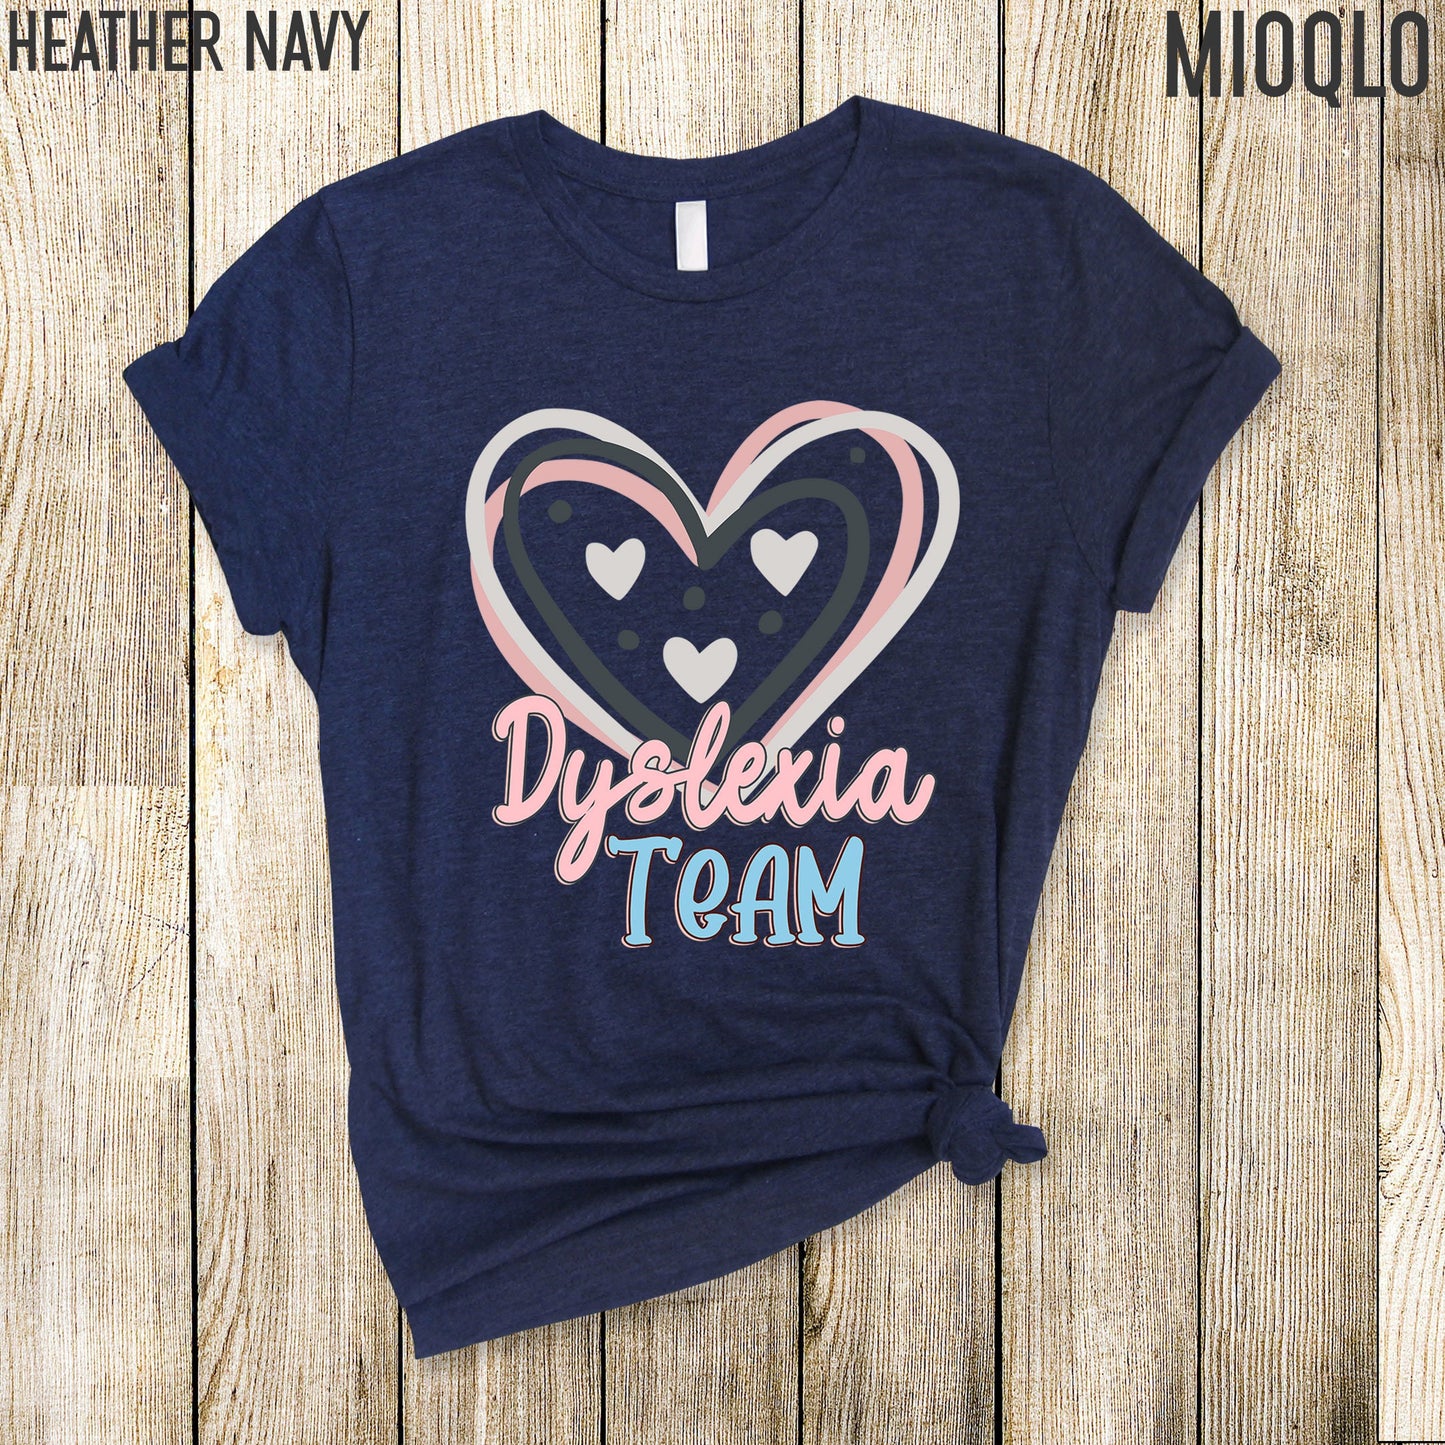 Dyslexia Team Tee Squad, Dyslexia Teacher Gift, Dyslexia, Dyslexia Therapist Sweatshirt, Dyslexia Therapy Sweater, Dyslexia Awareness Child